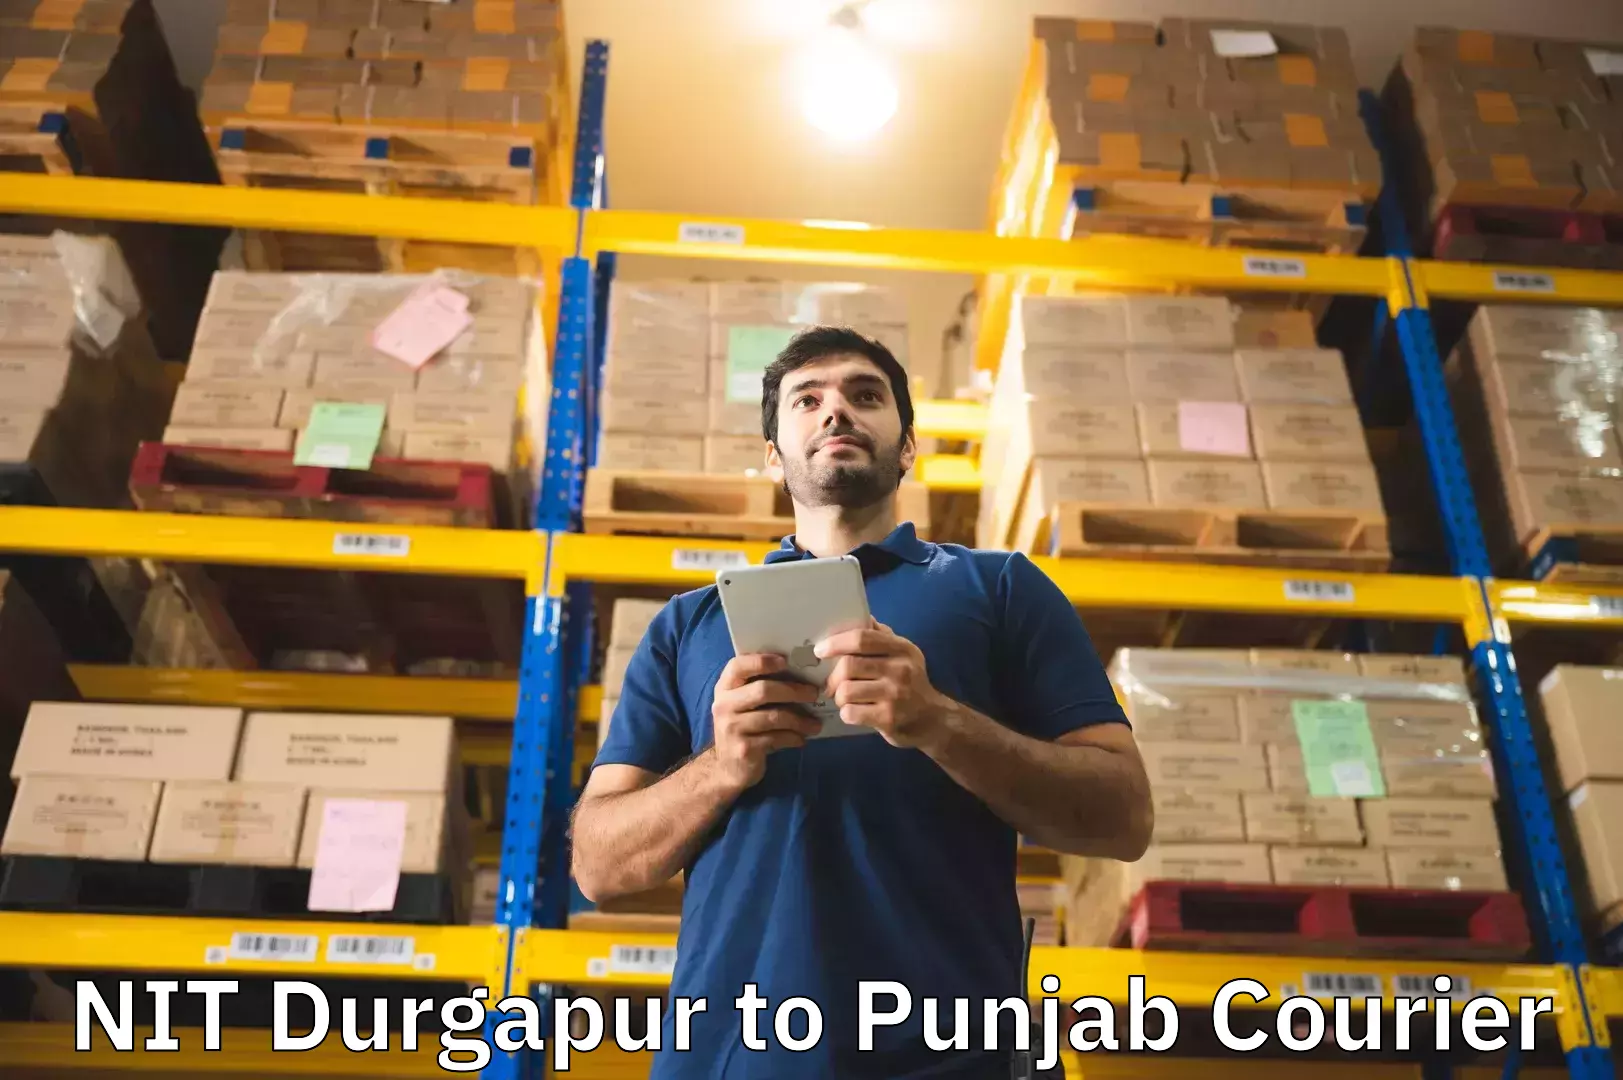 Baggage transport network NIT Durgapur to Punjab